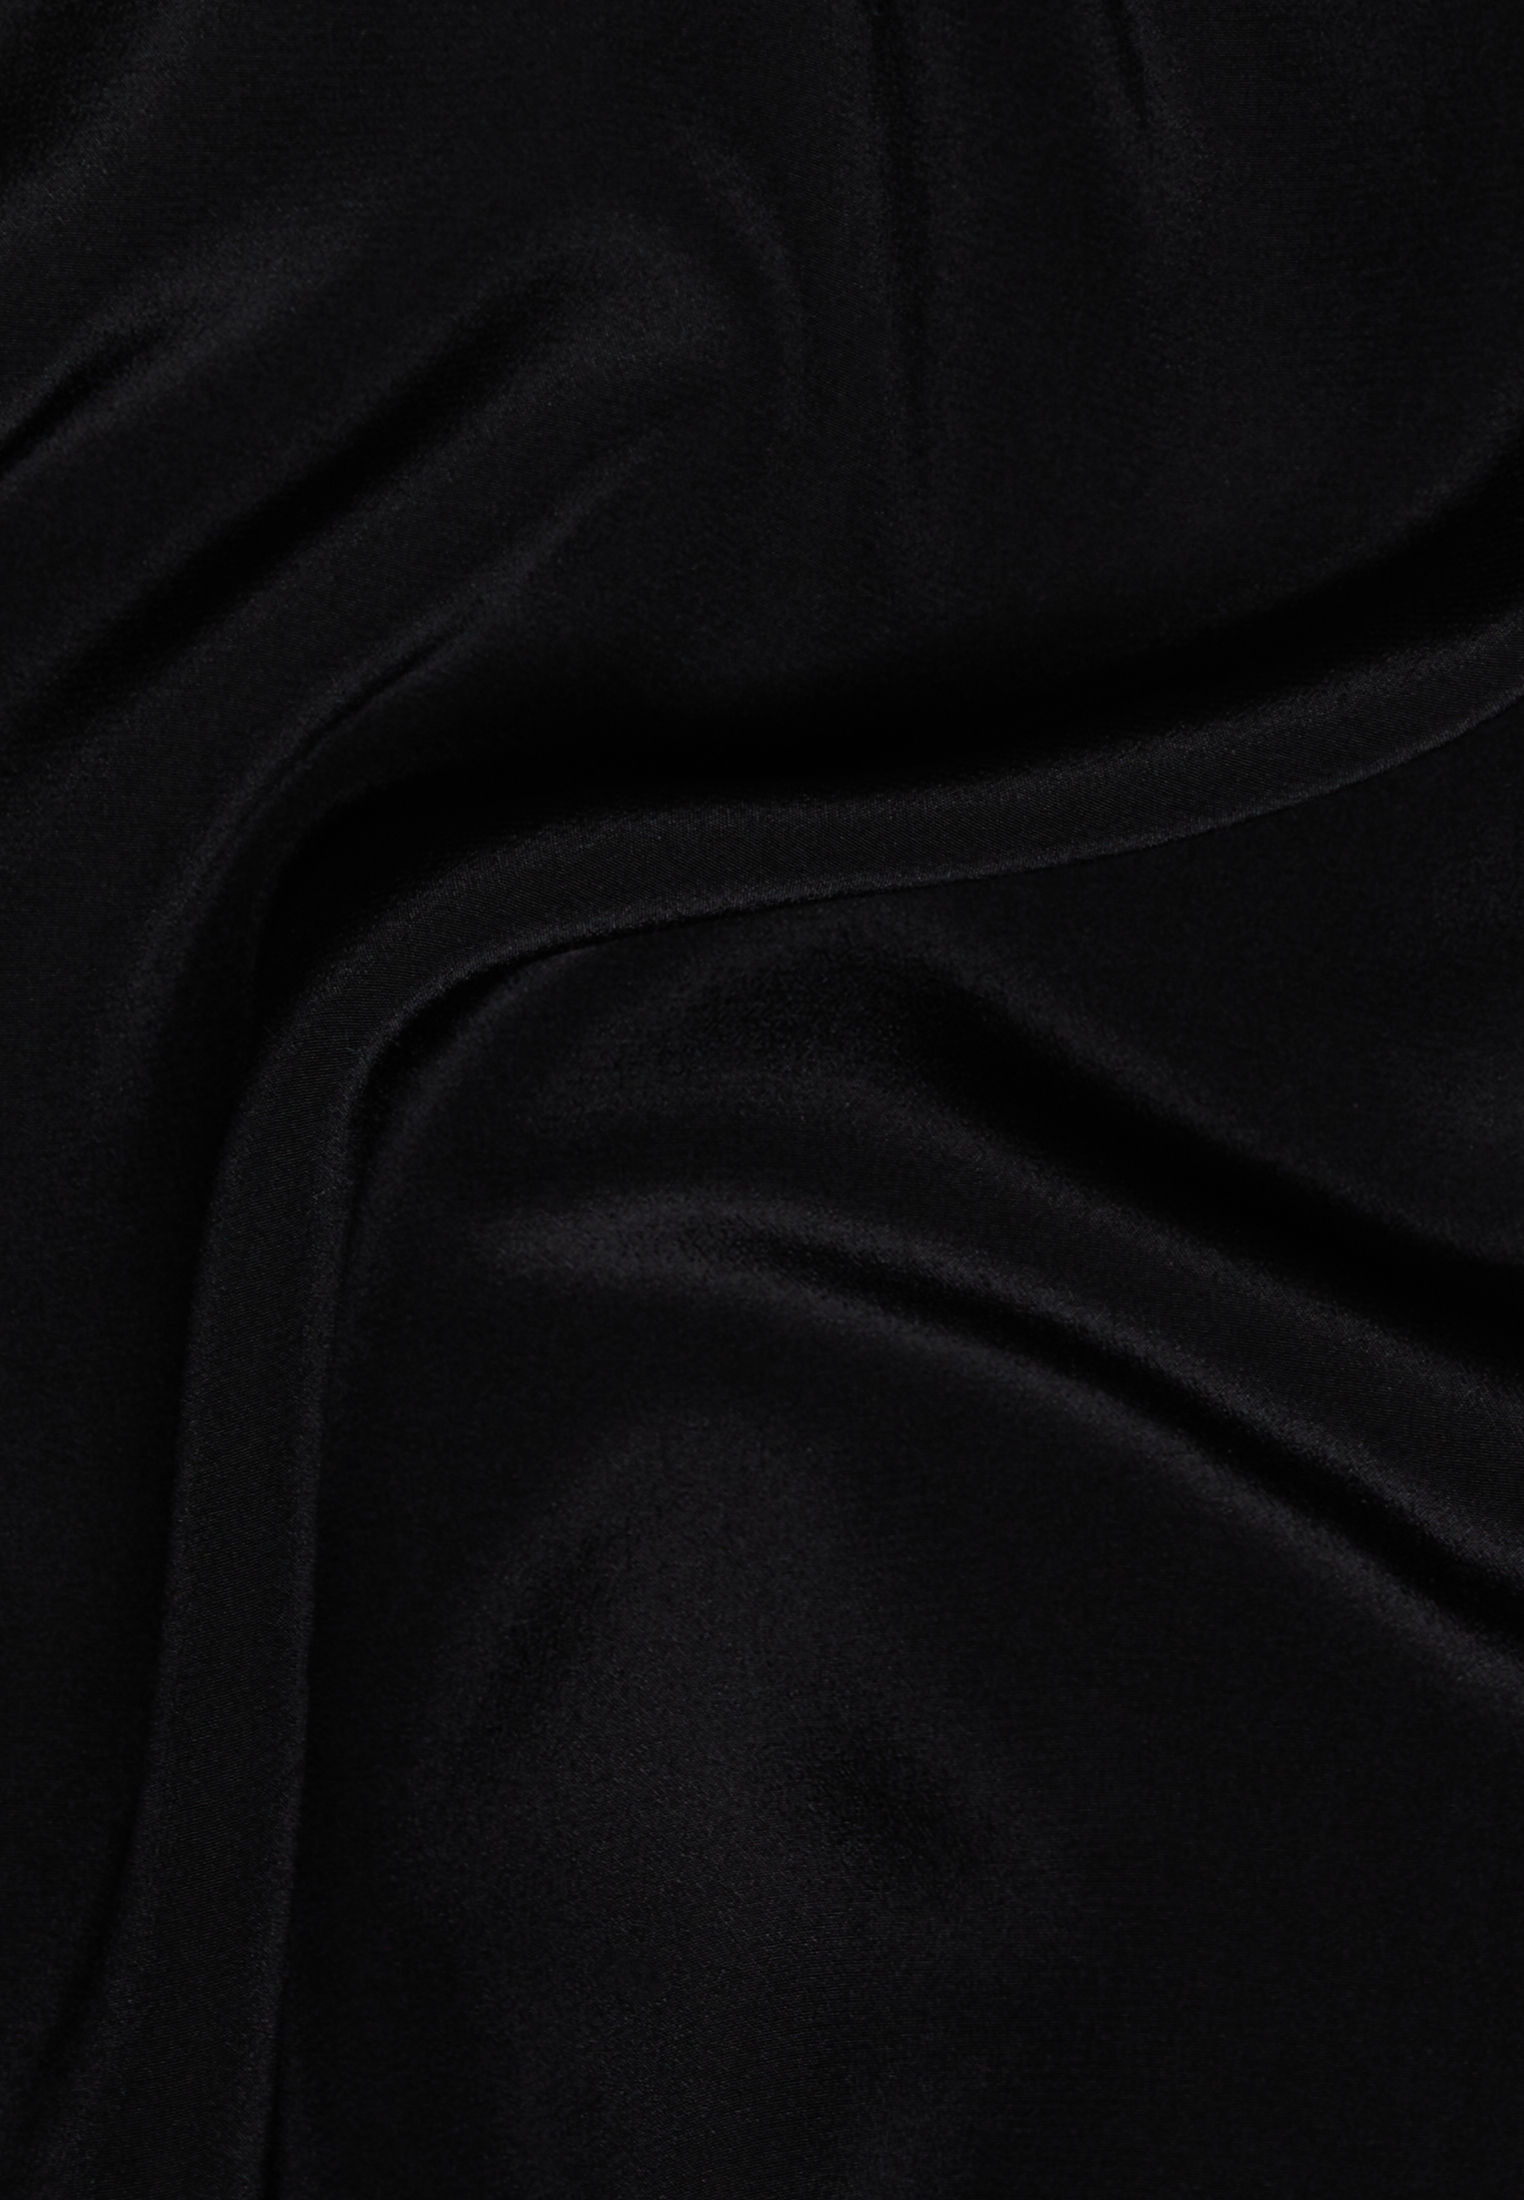 blouseshirt in zwart vlakte